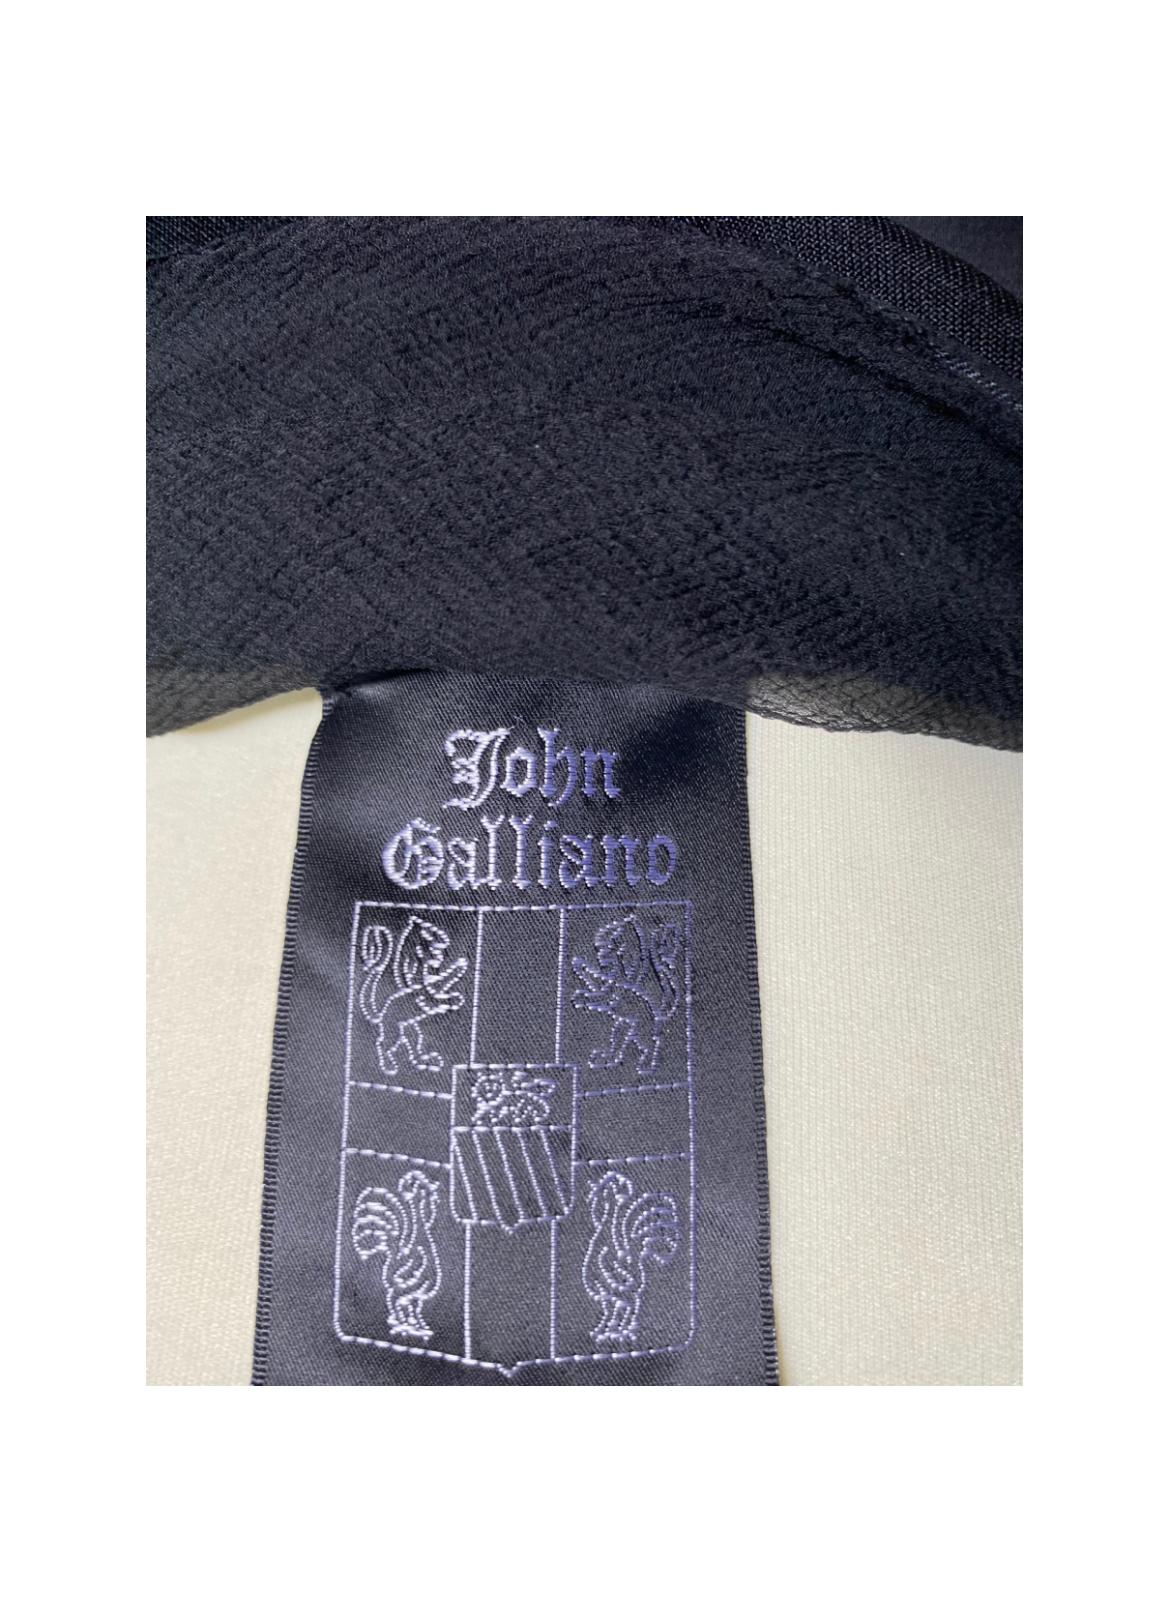 Robe de soirée de John Galliano. Fashion Show 1994, également exposé au Met Museum. En soie, stretch noir, avec différentes bretelles.
 Taille indiquée 38 italien. Épaules 32 cm, taille 30 cm, poitrine 32 cm, longueur du haut 140 cm.
En très bon